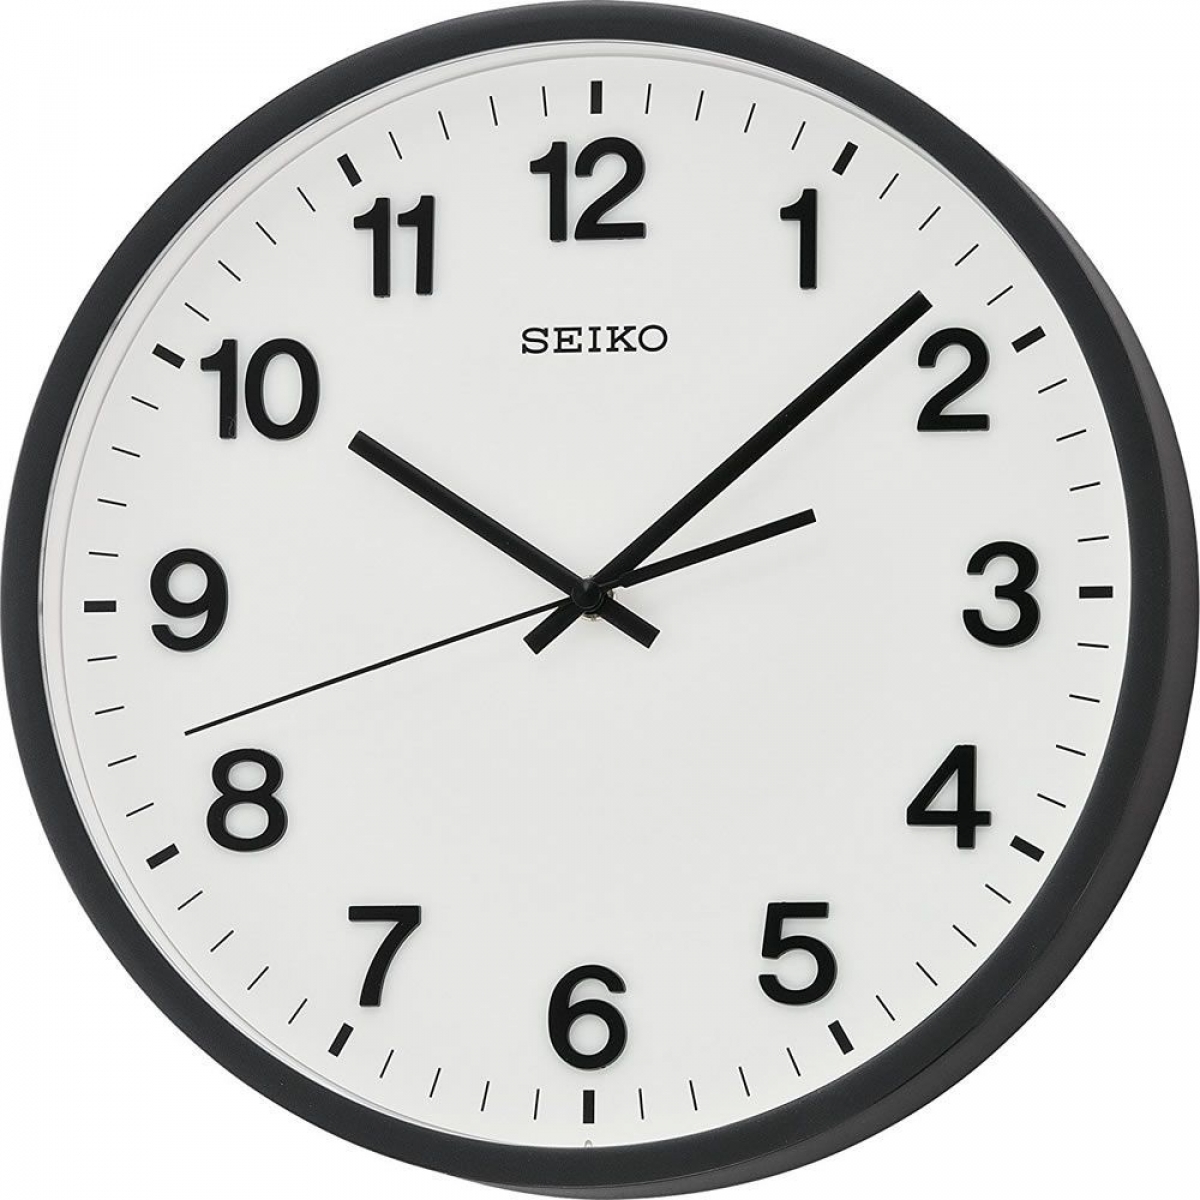 Стрелки на огромном циферблате. Настенные часы Seiko qxa640kn. Настенные часы Seiko qxa560an. Seiko qxa445kn. Настенные часы Seiko qxa598a.